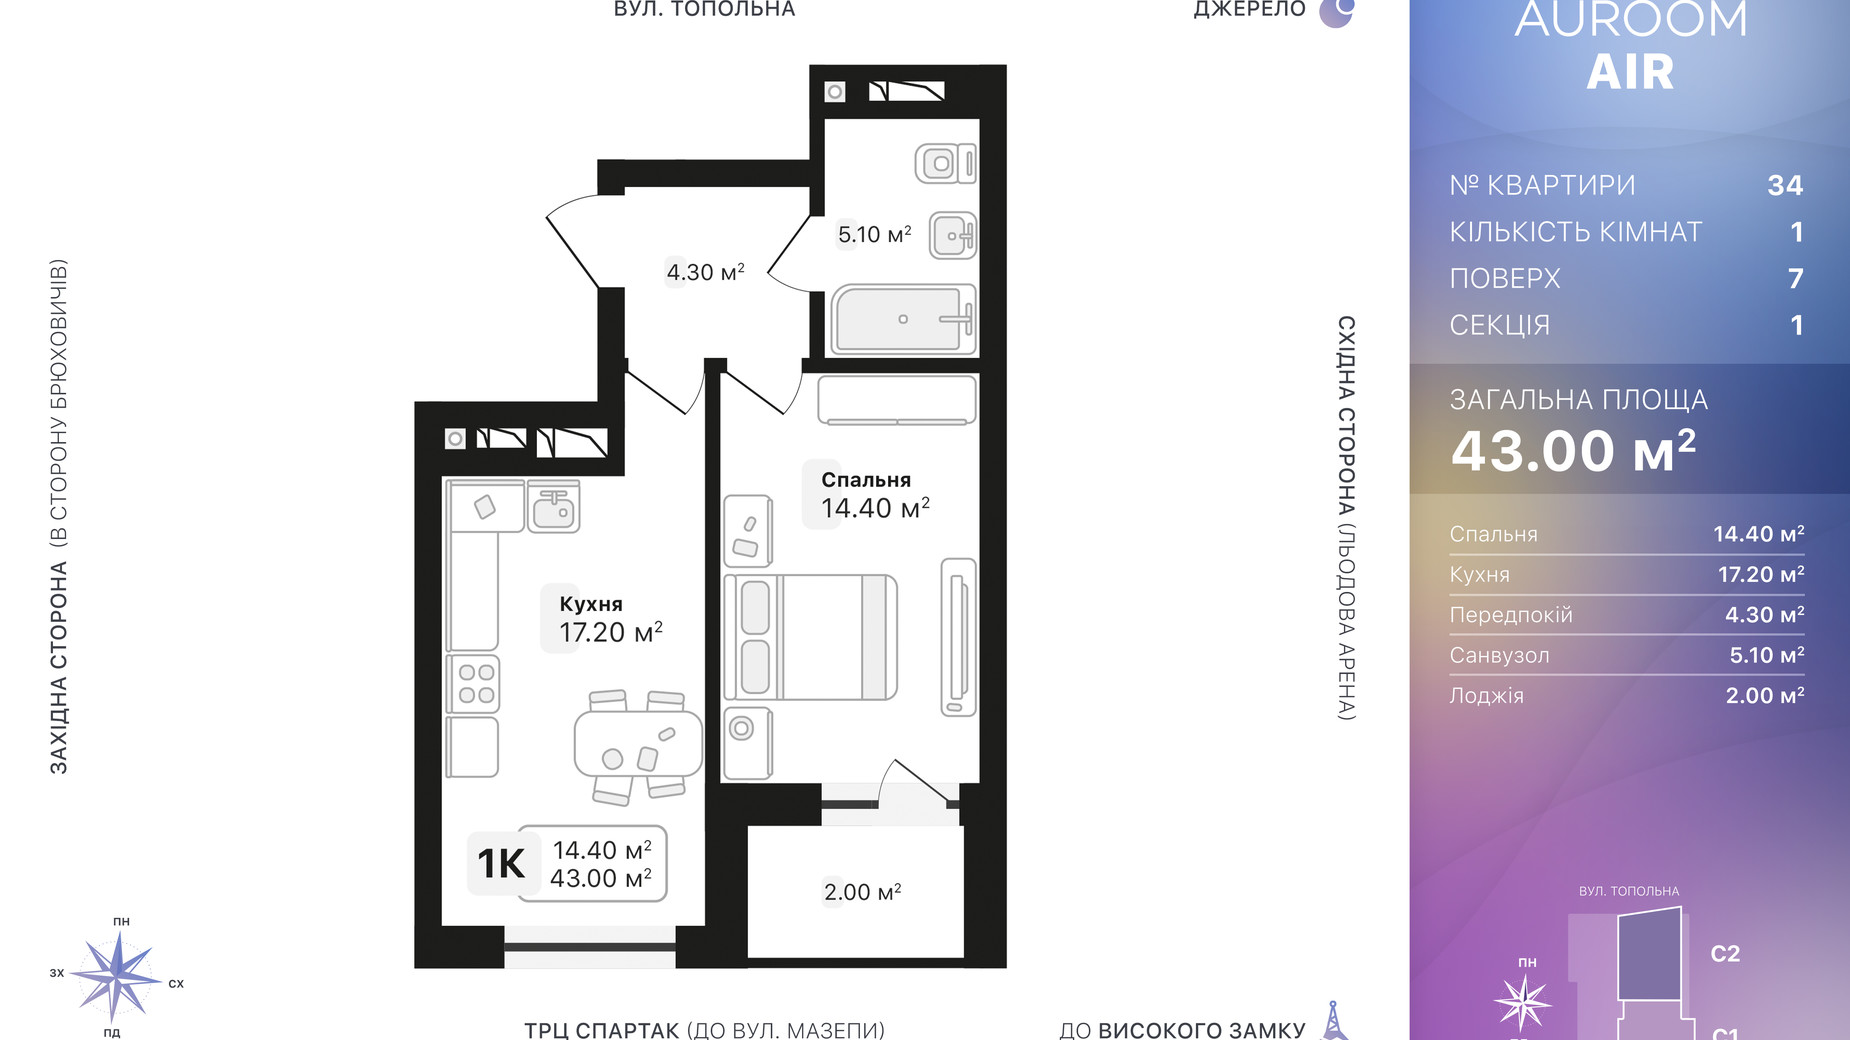 Планировка 1-комнатной квартиры в ЖК Auroom Air 43 м², фото 552243